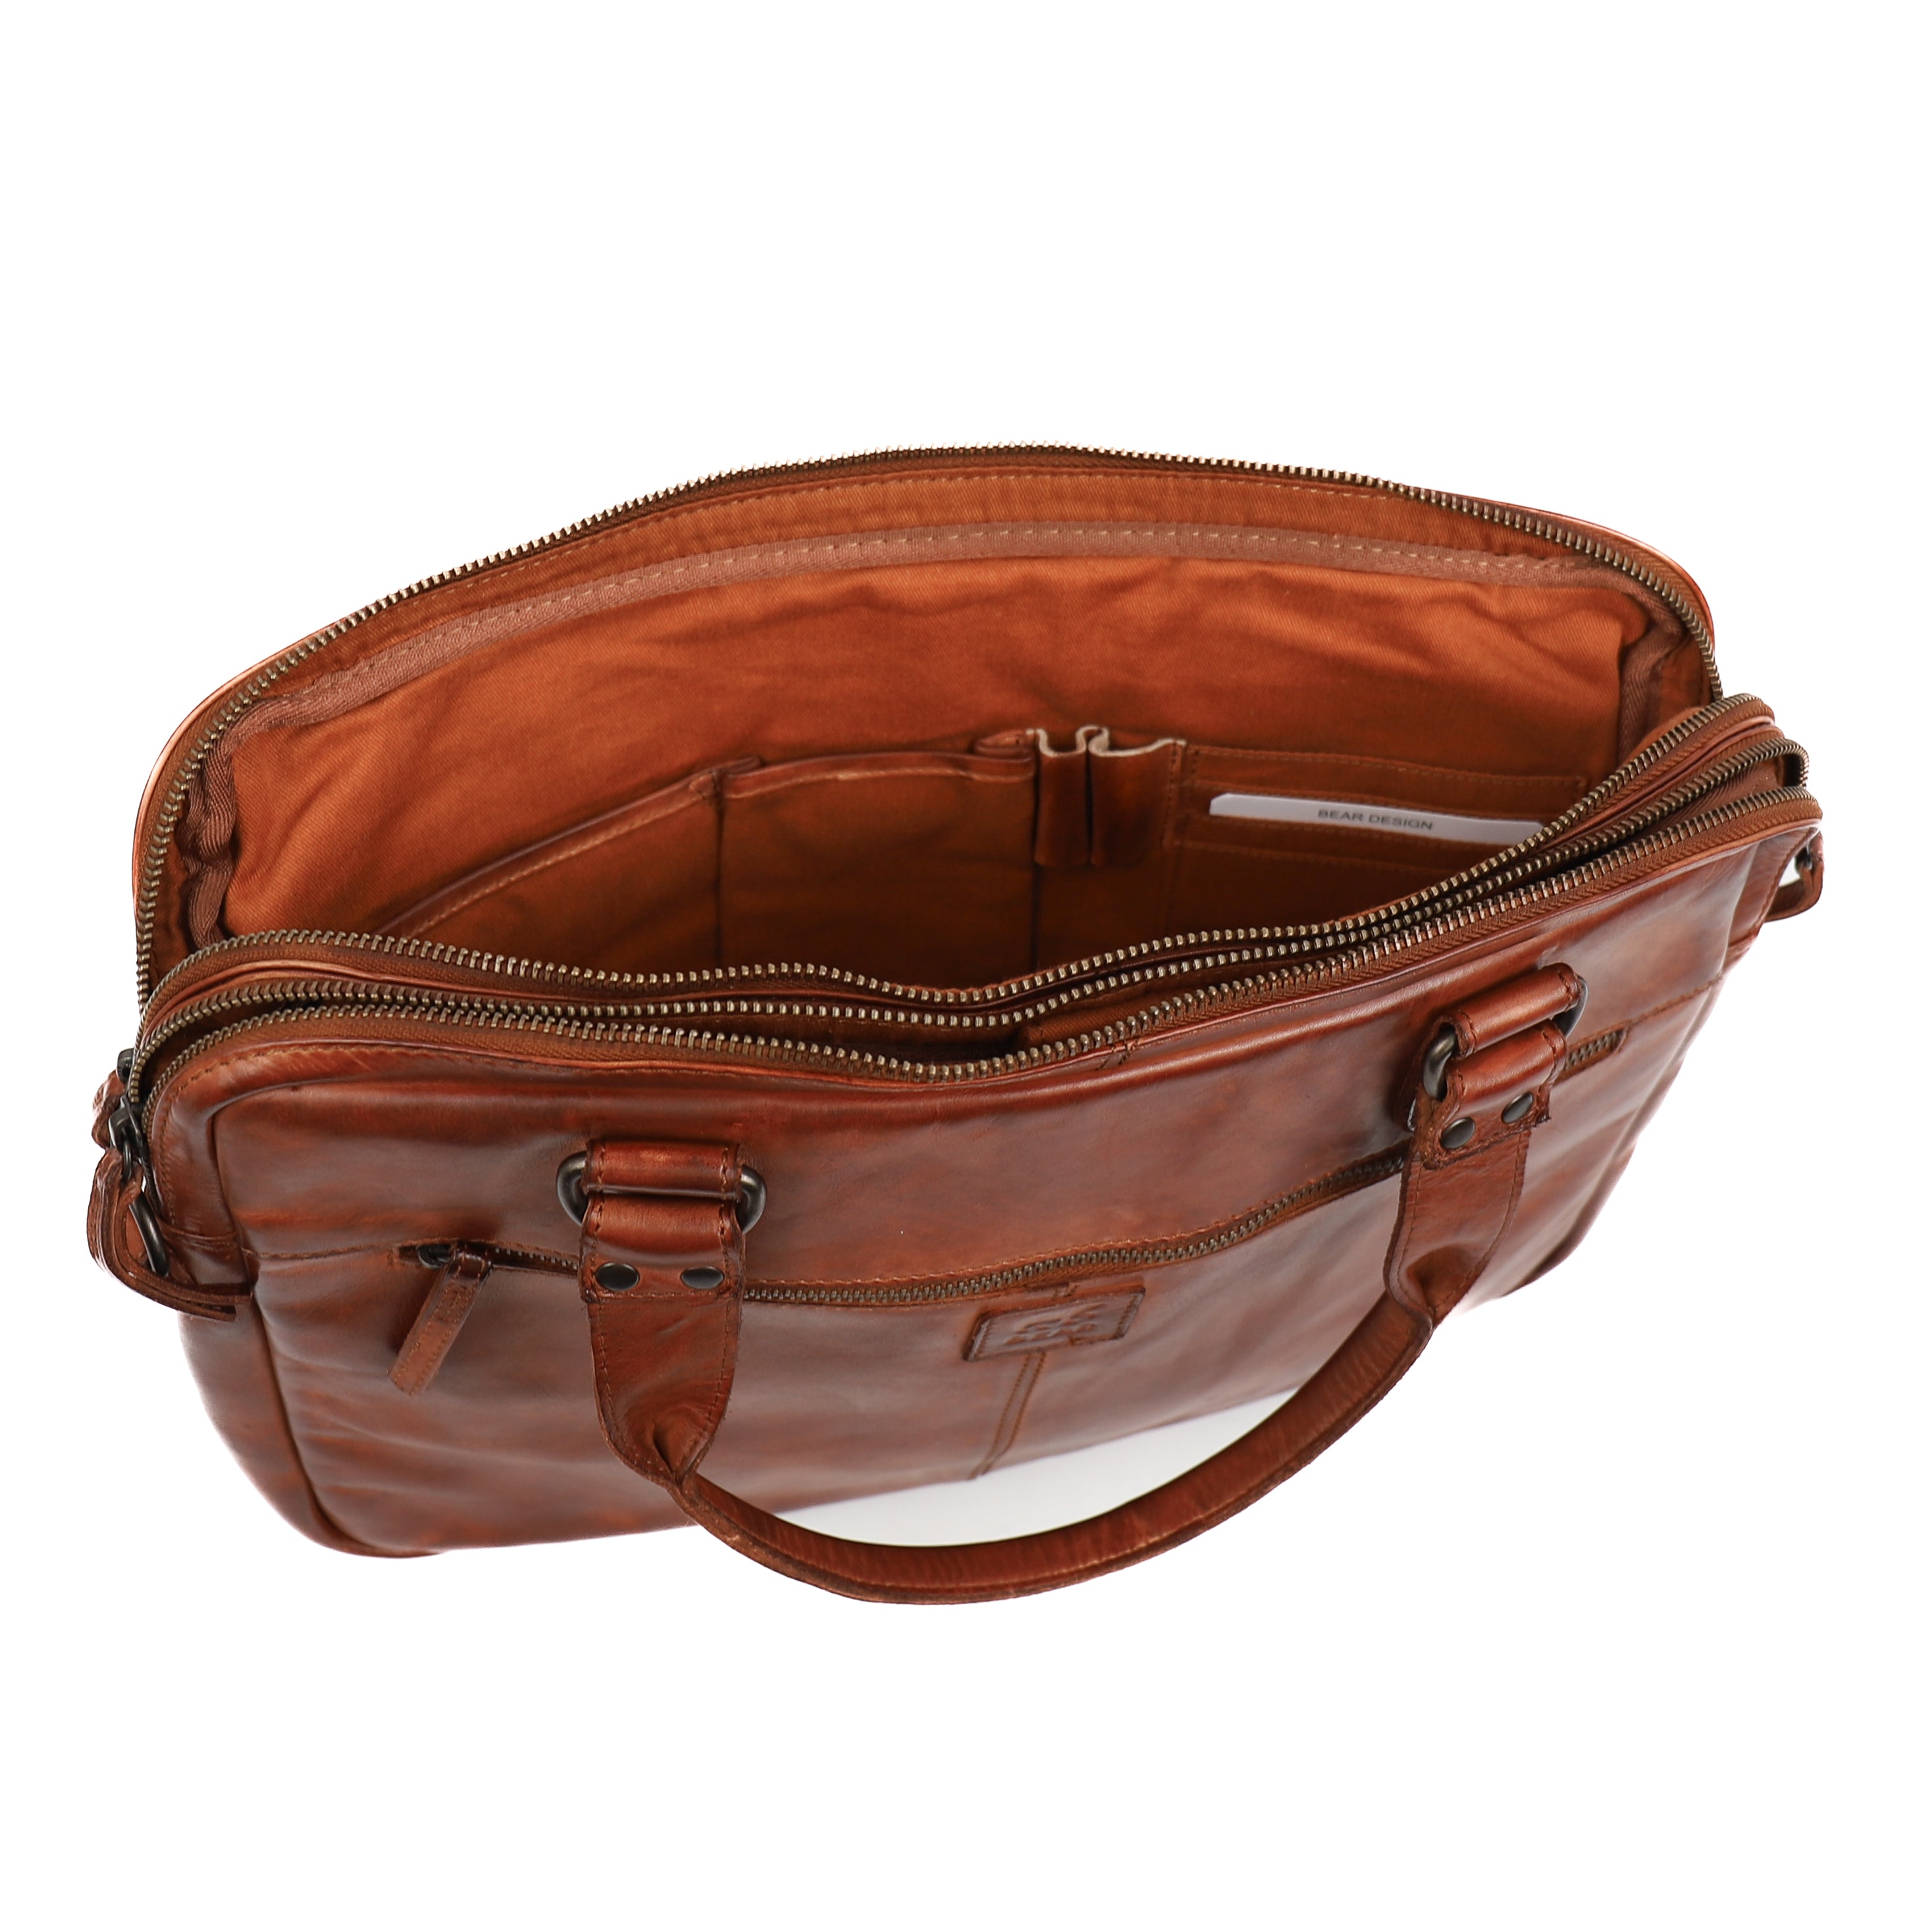 Laptop bag 'Teun' cognac - CL 41022